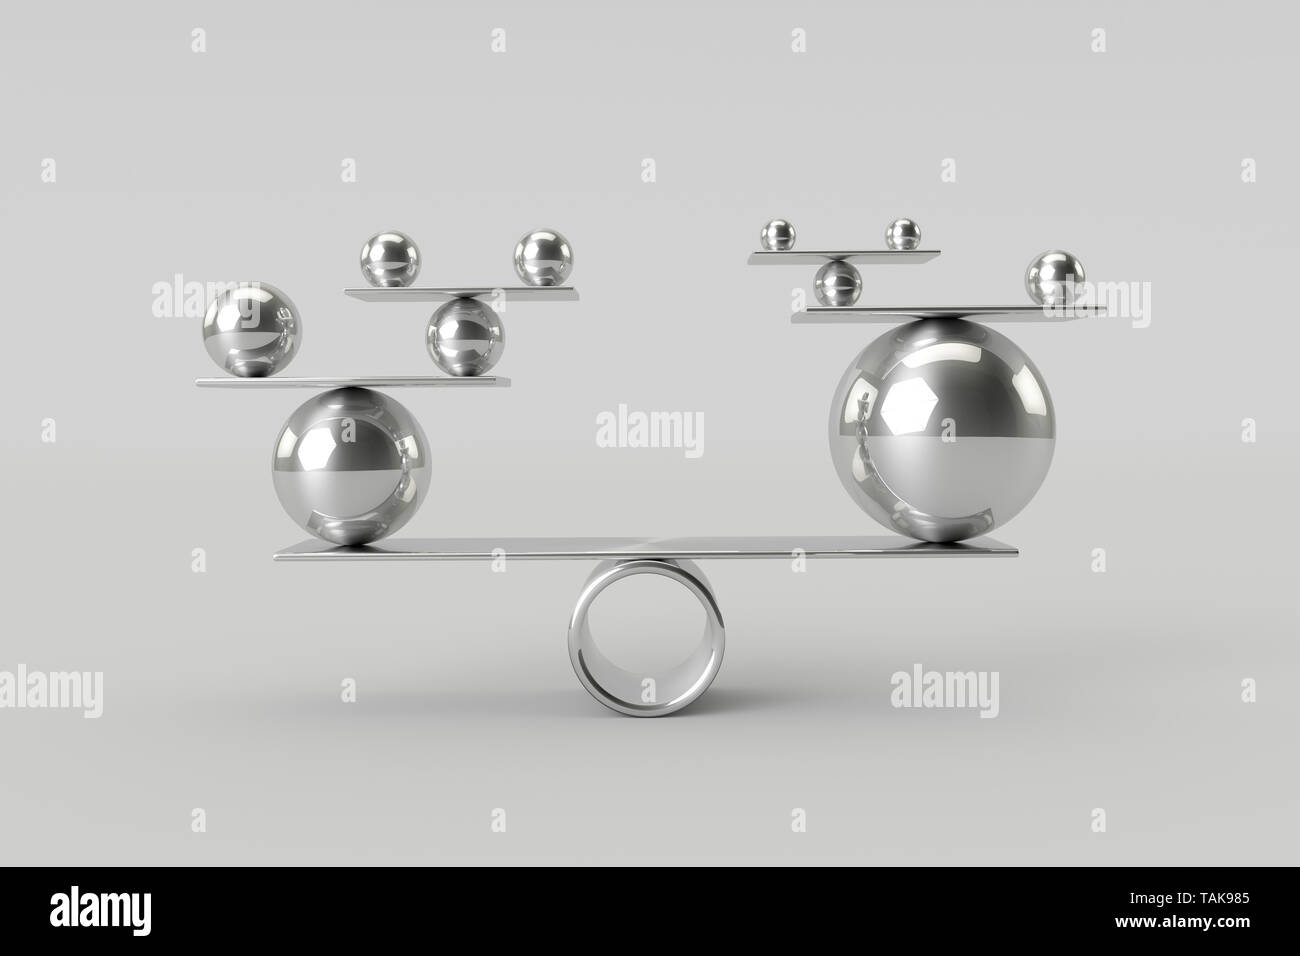 Perfekte Harmonie von Chrom glänzend Bälle. Teamwork, Risiko und Balance Konzept. 3D-Rendering. Stockfoto